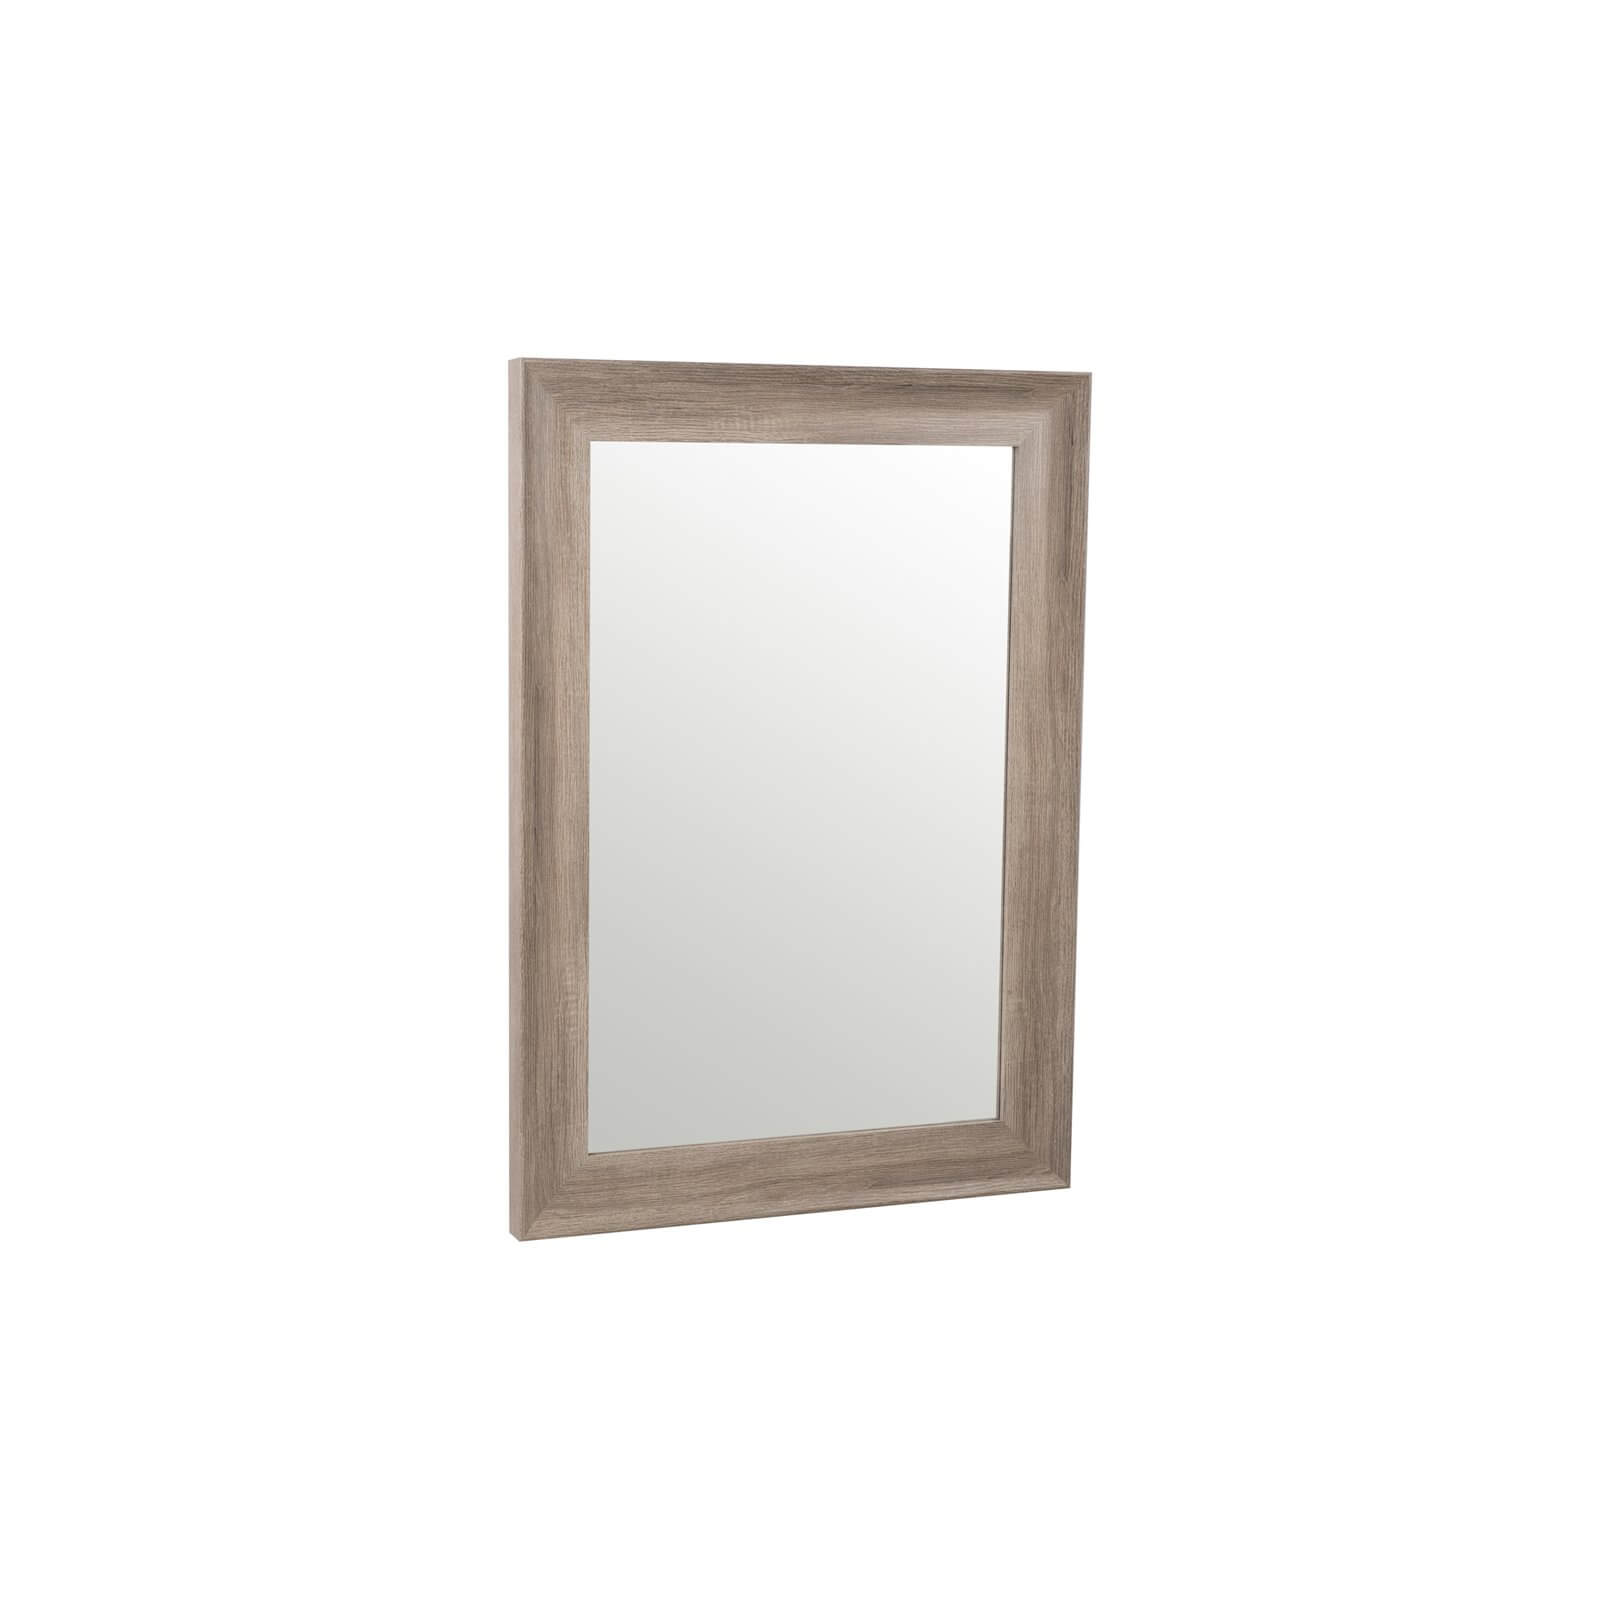 Rowe Framed Mirror Oak Wood Grain Effect 64x90cm